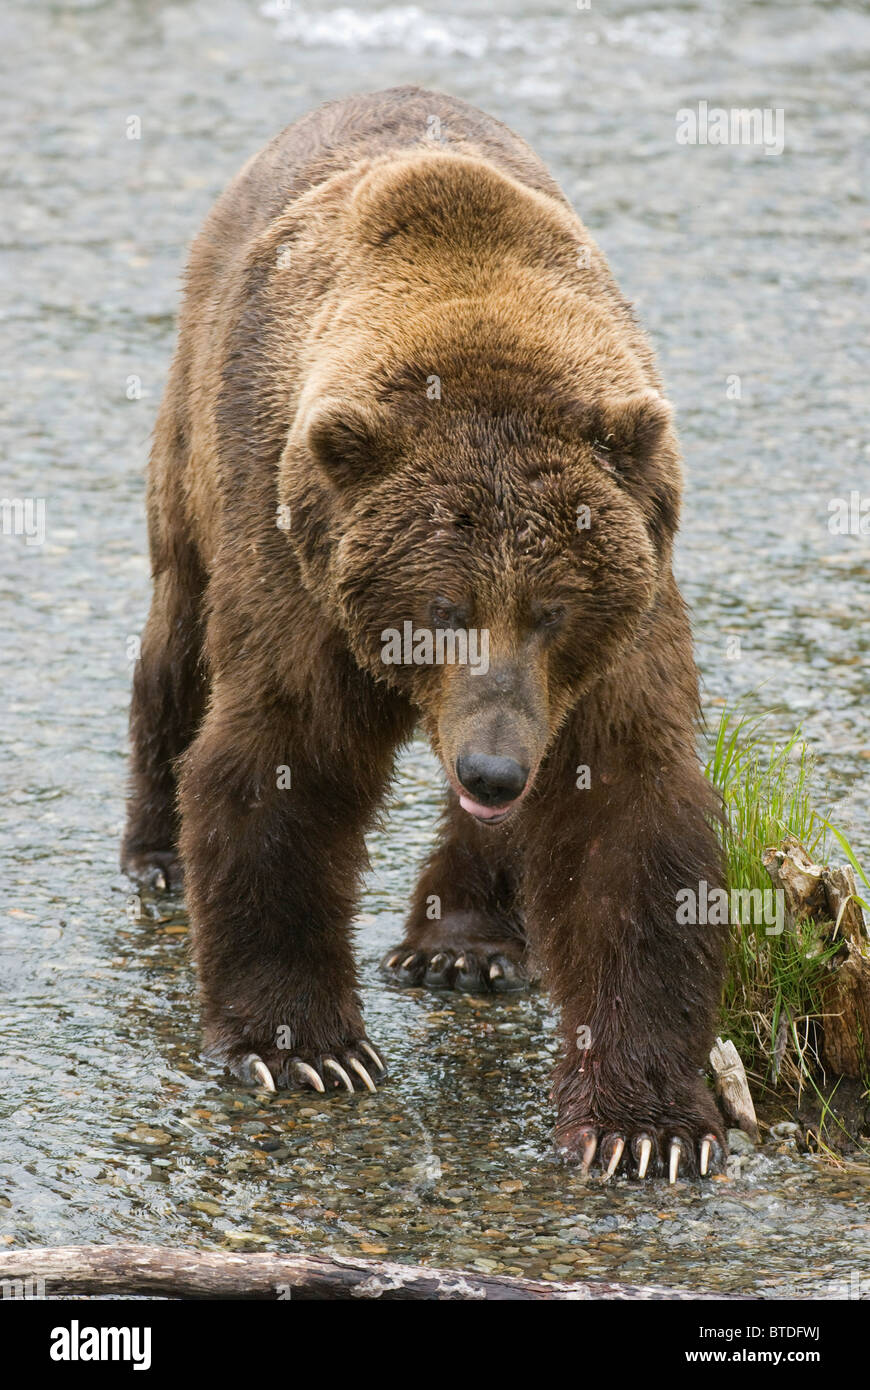 Ours brun avec de longues griffes se trouve dans les eaux peu profondes de Brooks River, Katmai National Park, Alaska, modifié numériquement Banque D'Images